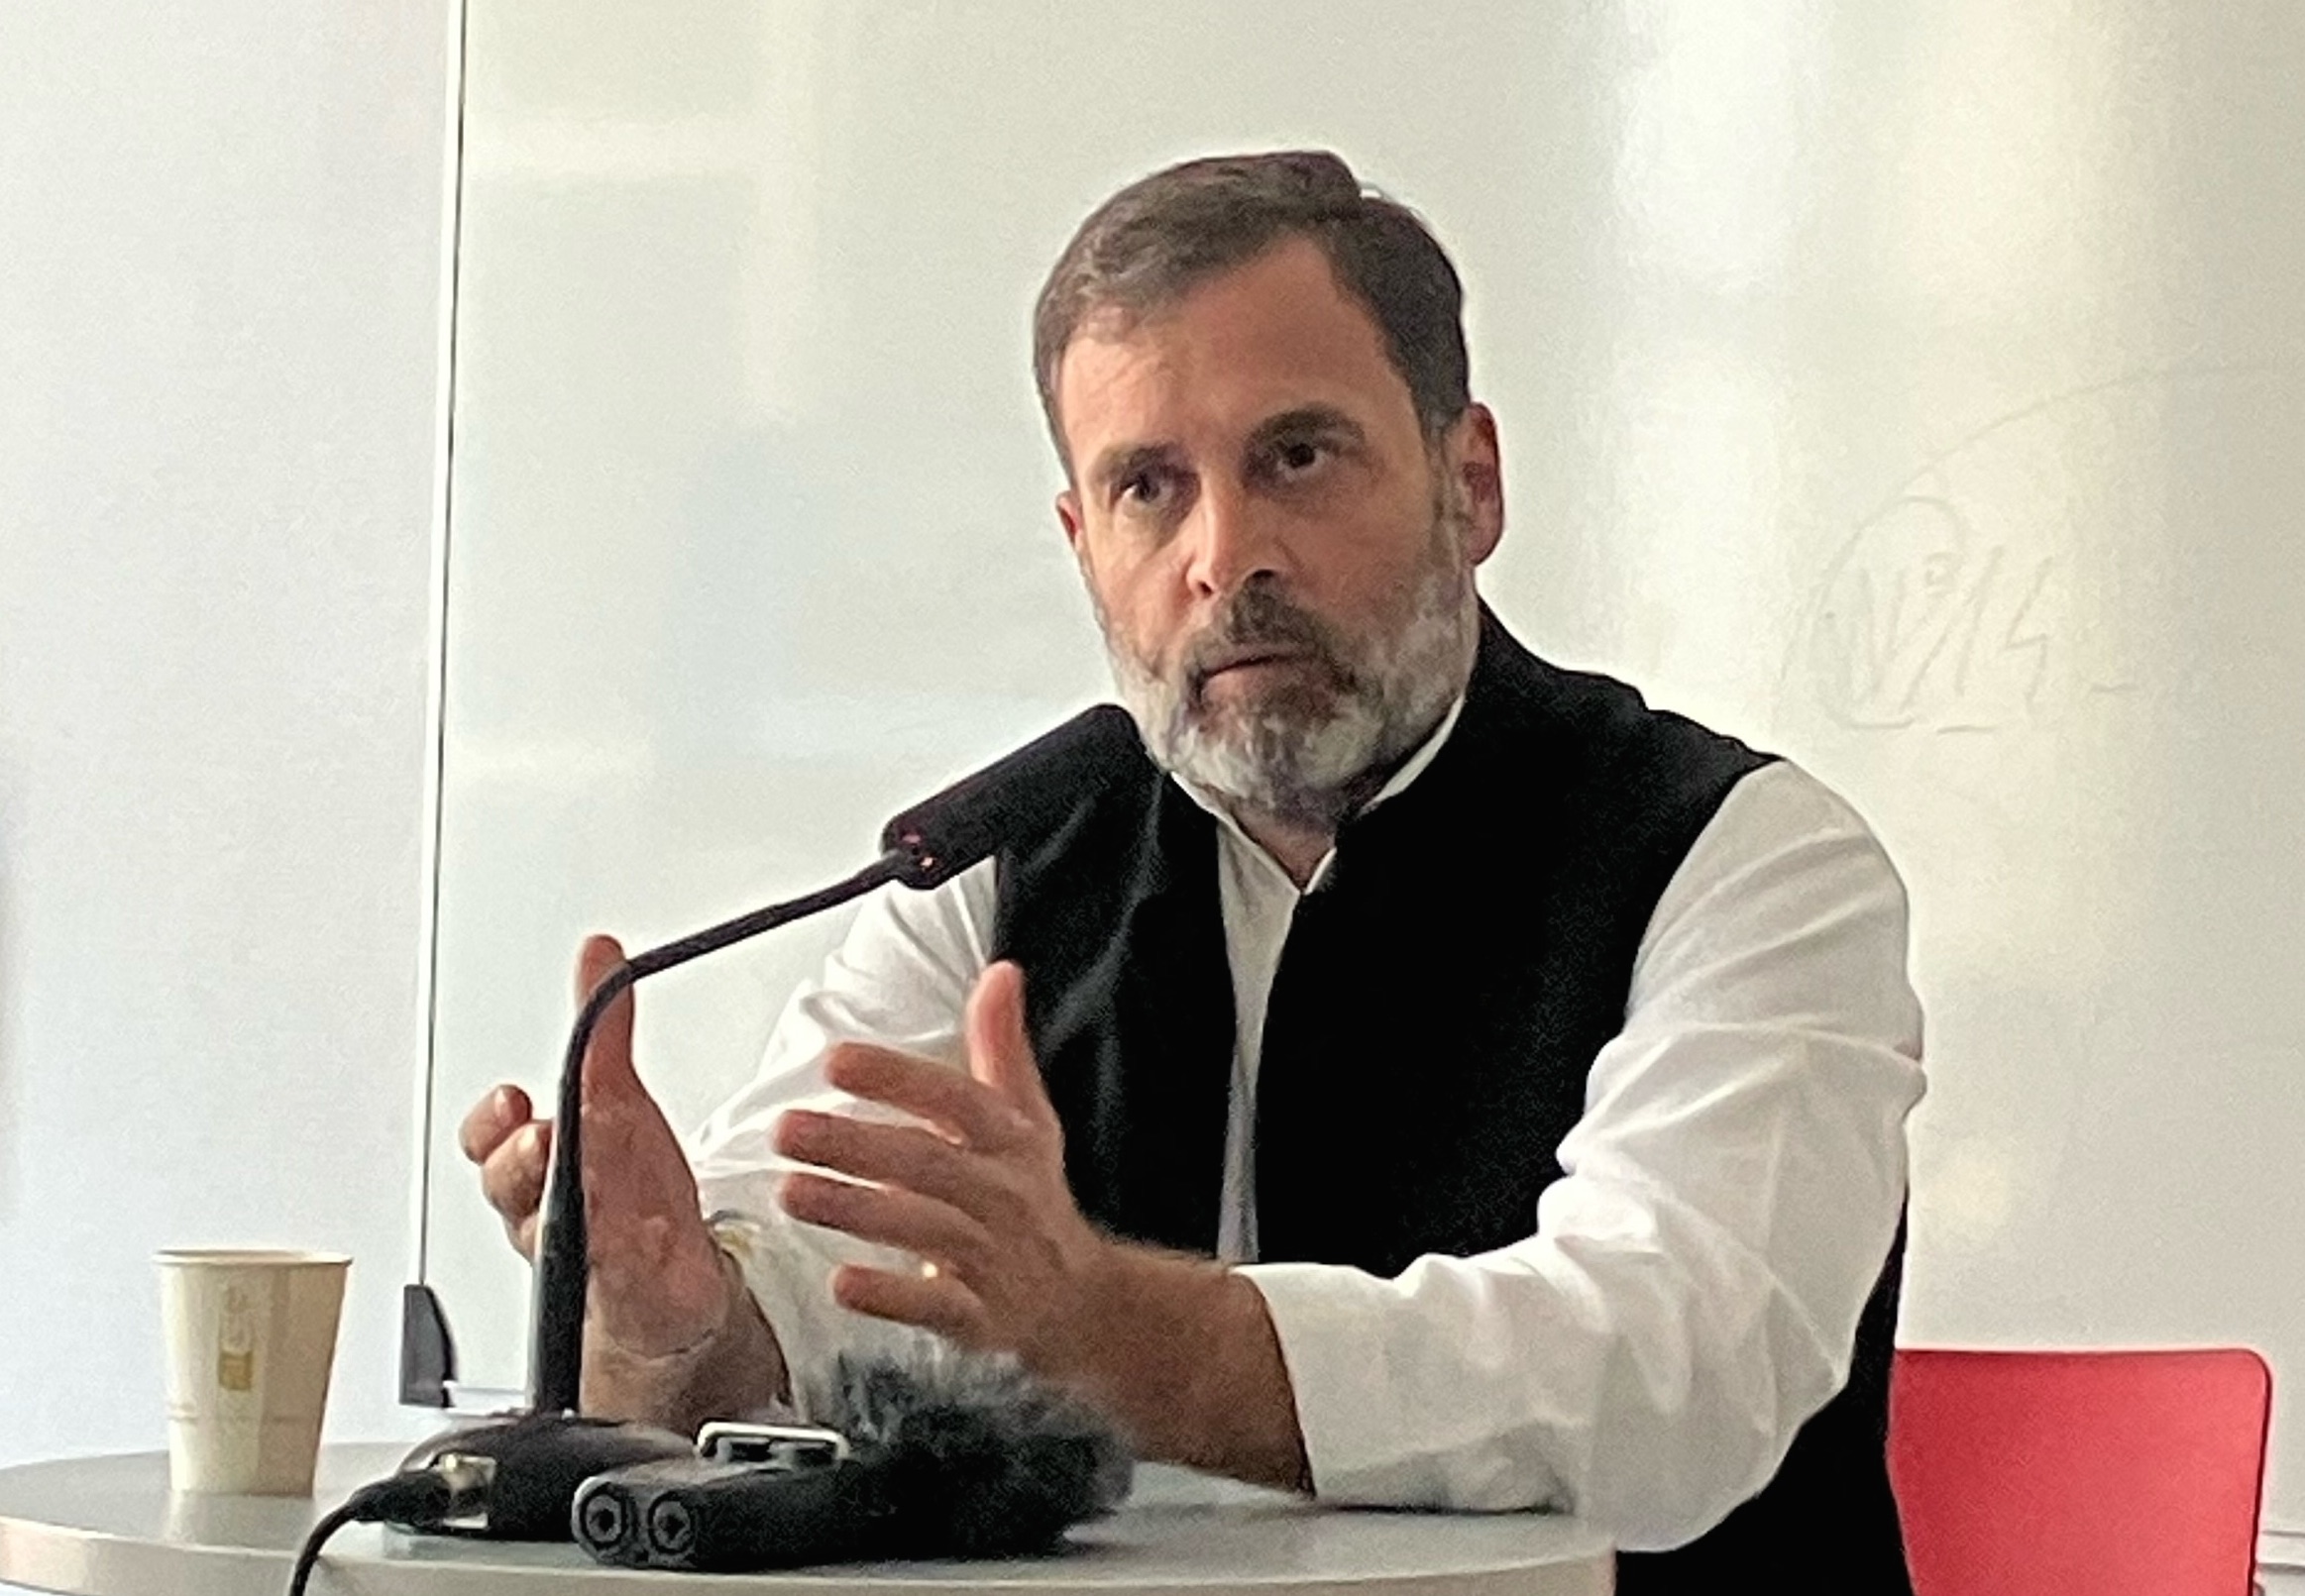 L'opposant indien Rahul Gandhi, ancien président du parti du Congrès, lors d'une conférence de presse à Sciences Po, le 8 septembre à Paris. (Copyright : Patrick de Jacquelot)